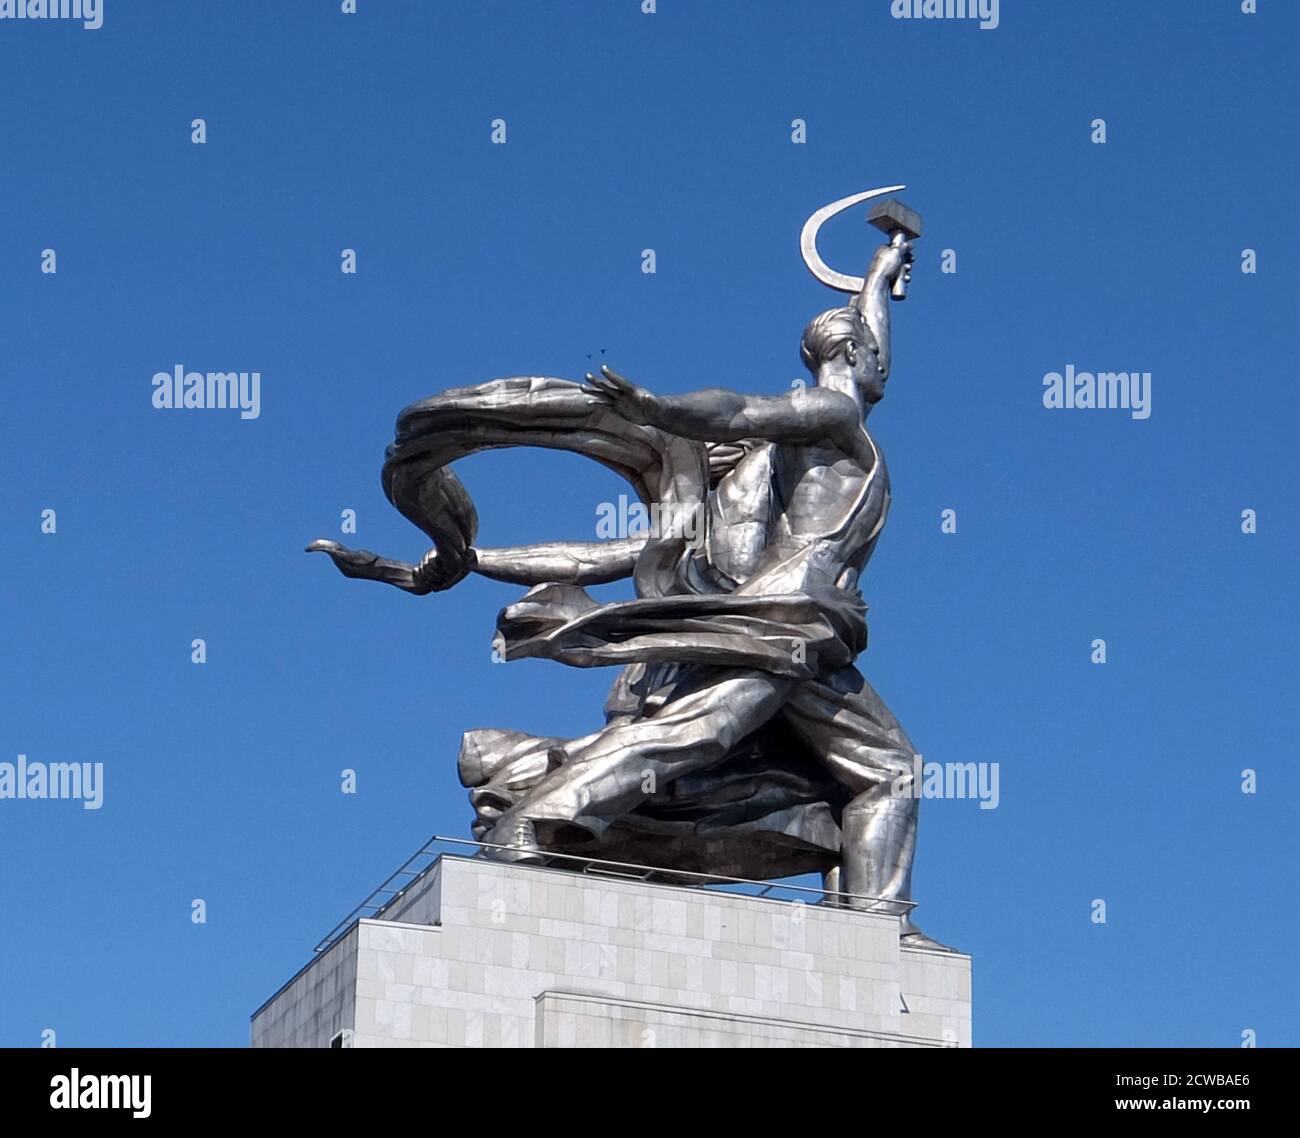 Arbeiter und Kolchosfrau Skulptur in Moskau, zeigt zwei Figuren mit einer Sichel und einem Hammer über ihren Köpfen angehoben. Sie ist 24.5 Meter (78 Fuß) hoch, aus Edelstahl von Vera Mukhina für die Weltausstellung 1937 in Paris hergestellt und anschließend nach Moskau gezogen. Die Skulptur ist ein Beispiel für den sozialistischen realistischen Stil, sowie Art Deco-Stil. Der Arbeiter hält einen Hammer und die Kolchosfrau eine Sichel hoch, um das Hammer- und Sichelsymbol zu bilden. Stockfoto